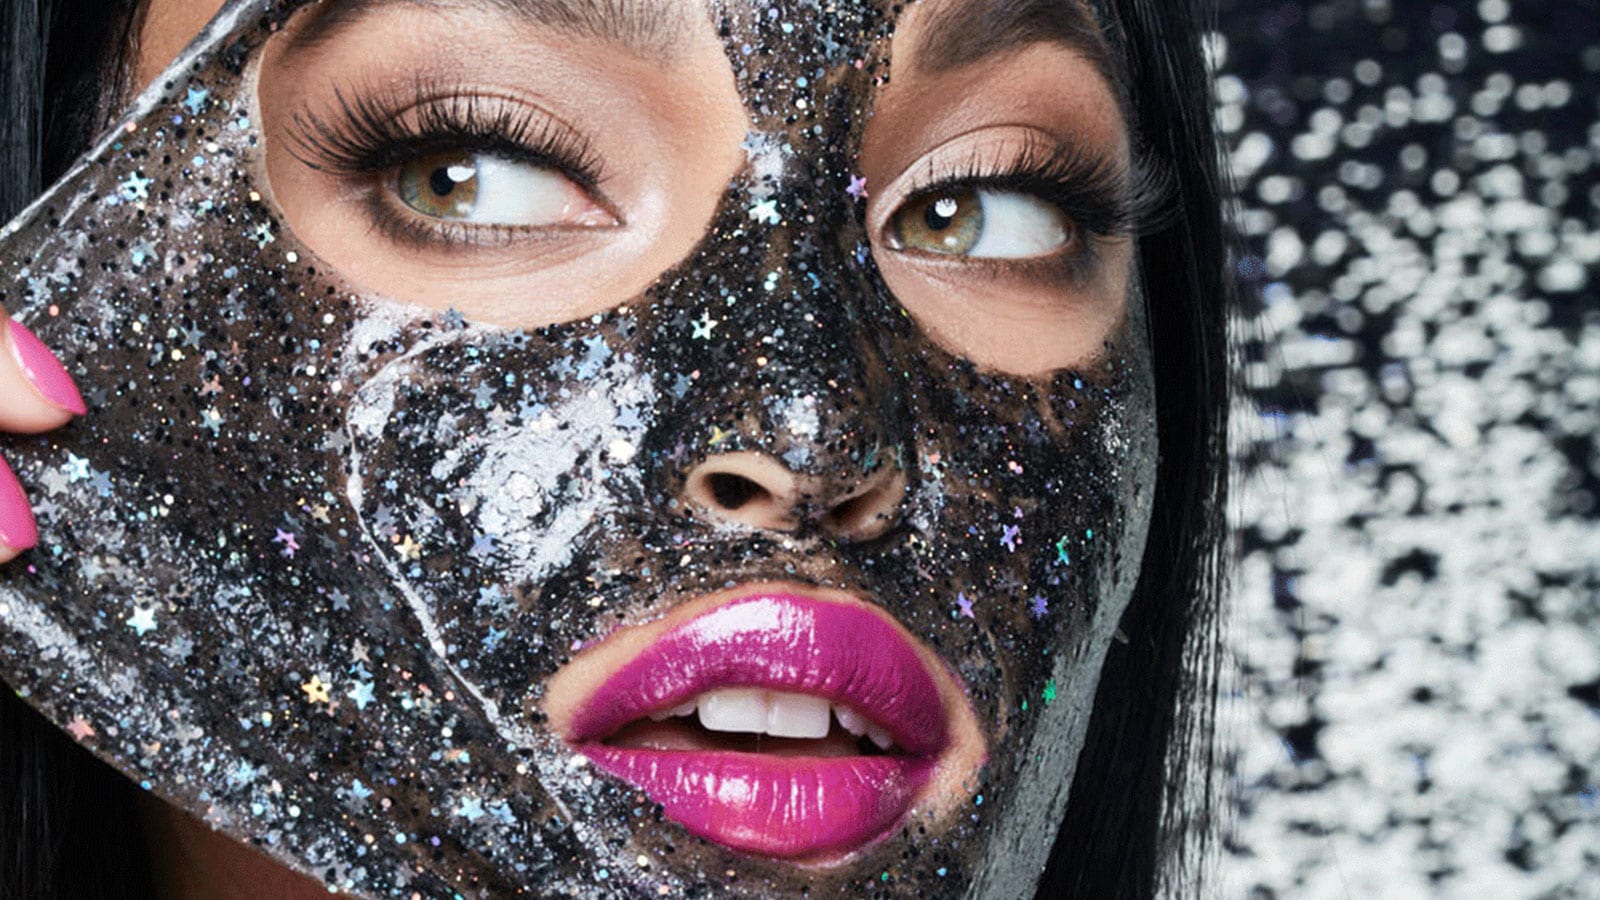 Glitter mask, czyli maseczki z brokatem. Poznaj, kosmetyczny hit prosto z Instagrama